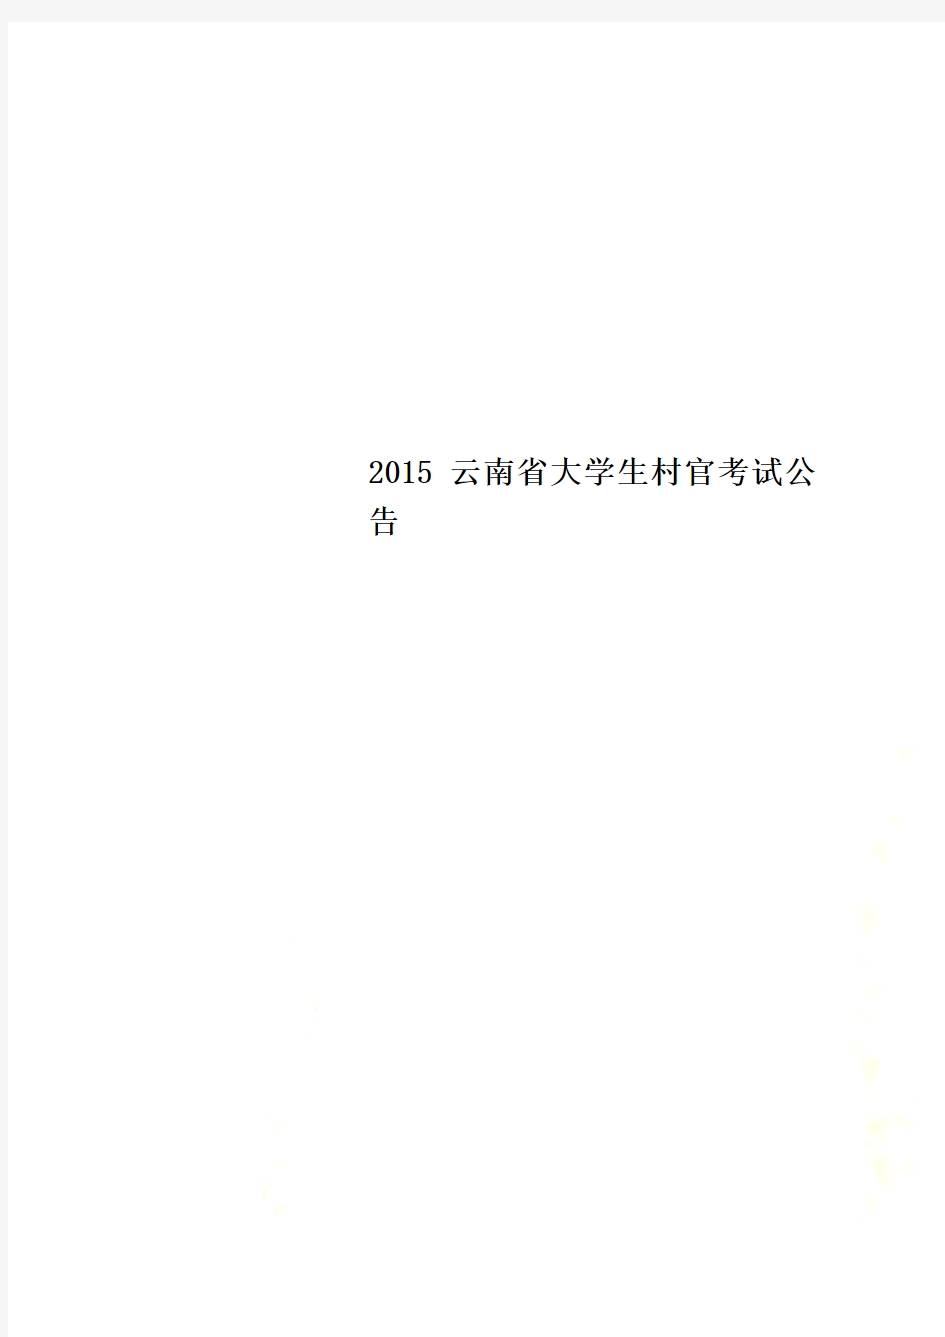 2015云南省大学生村官考试公告